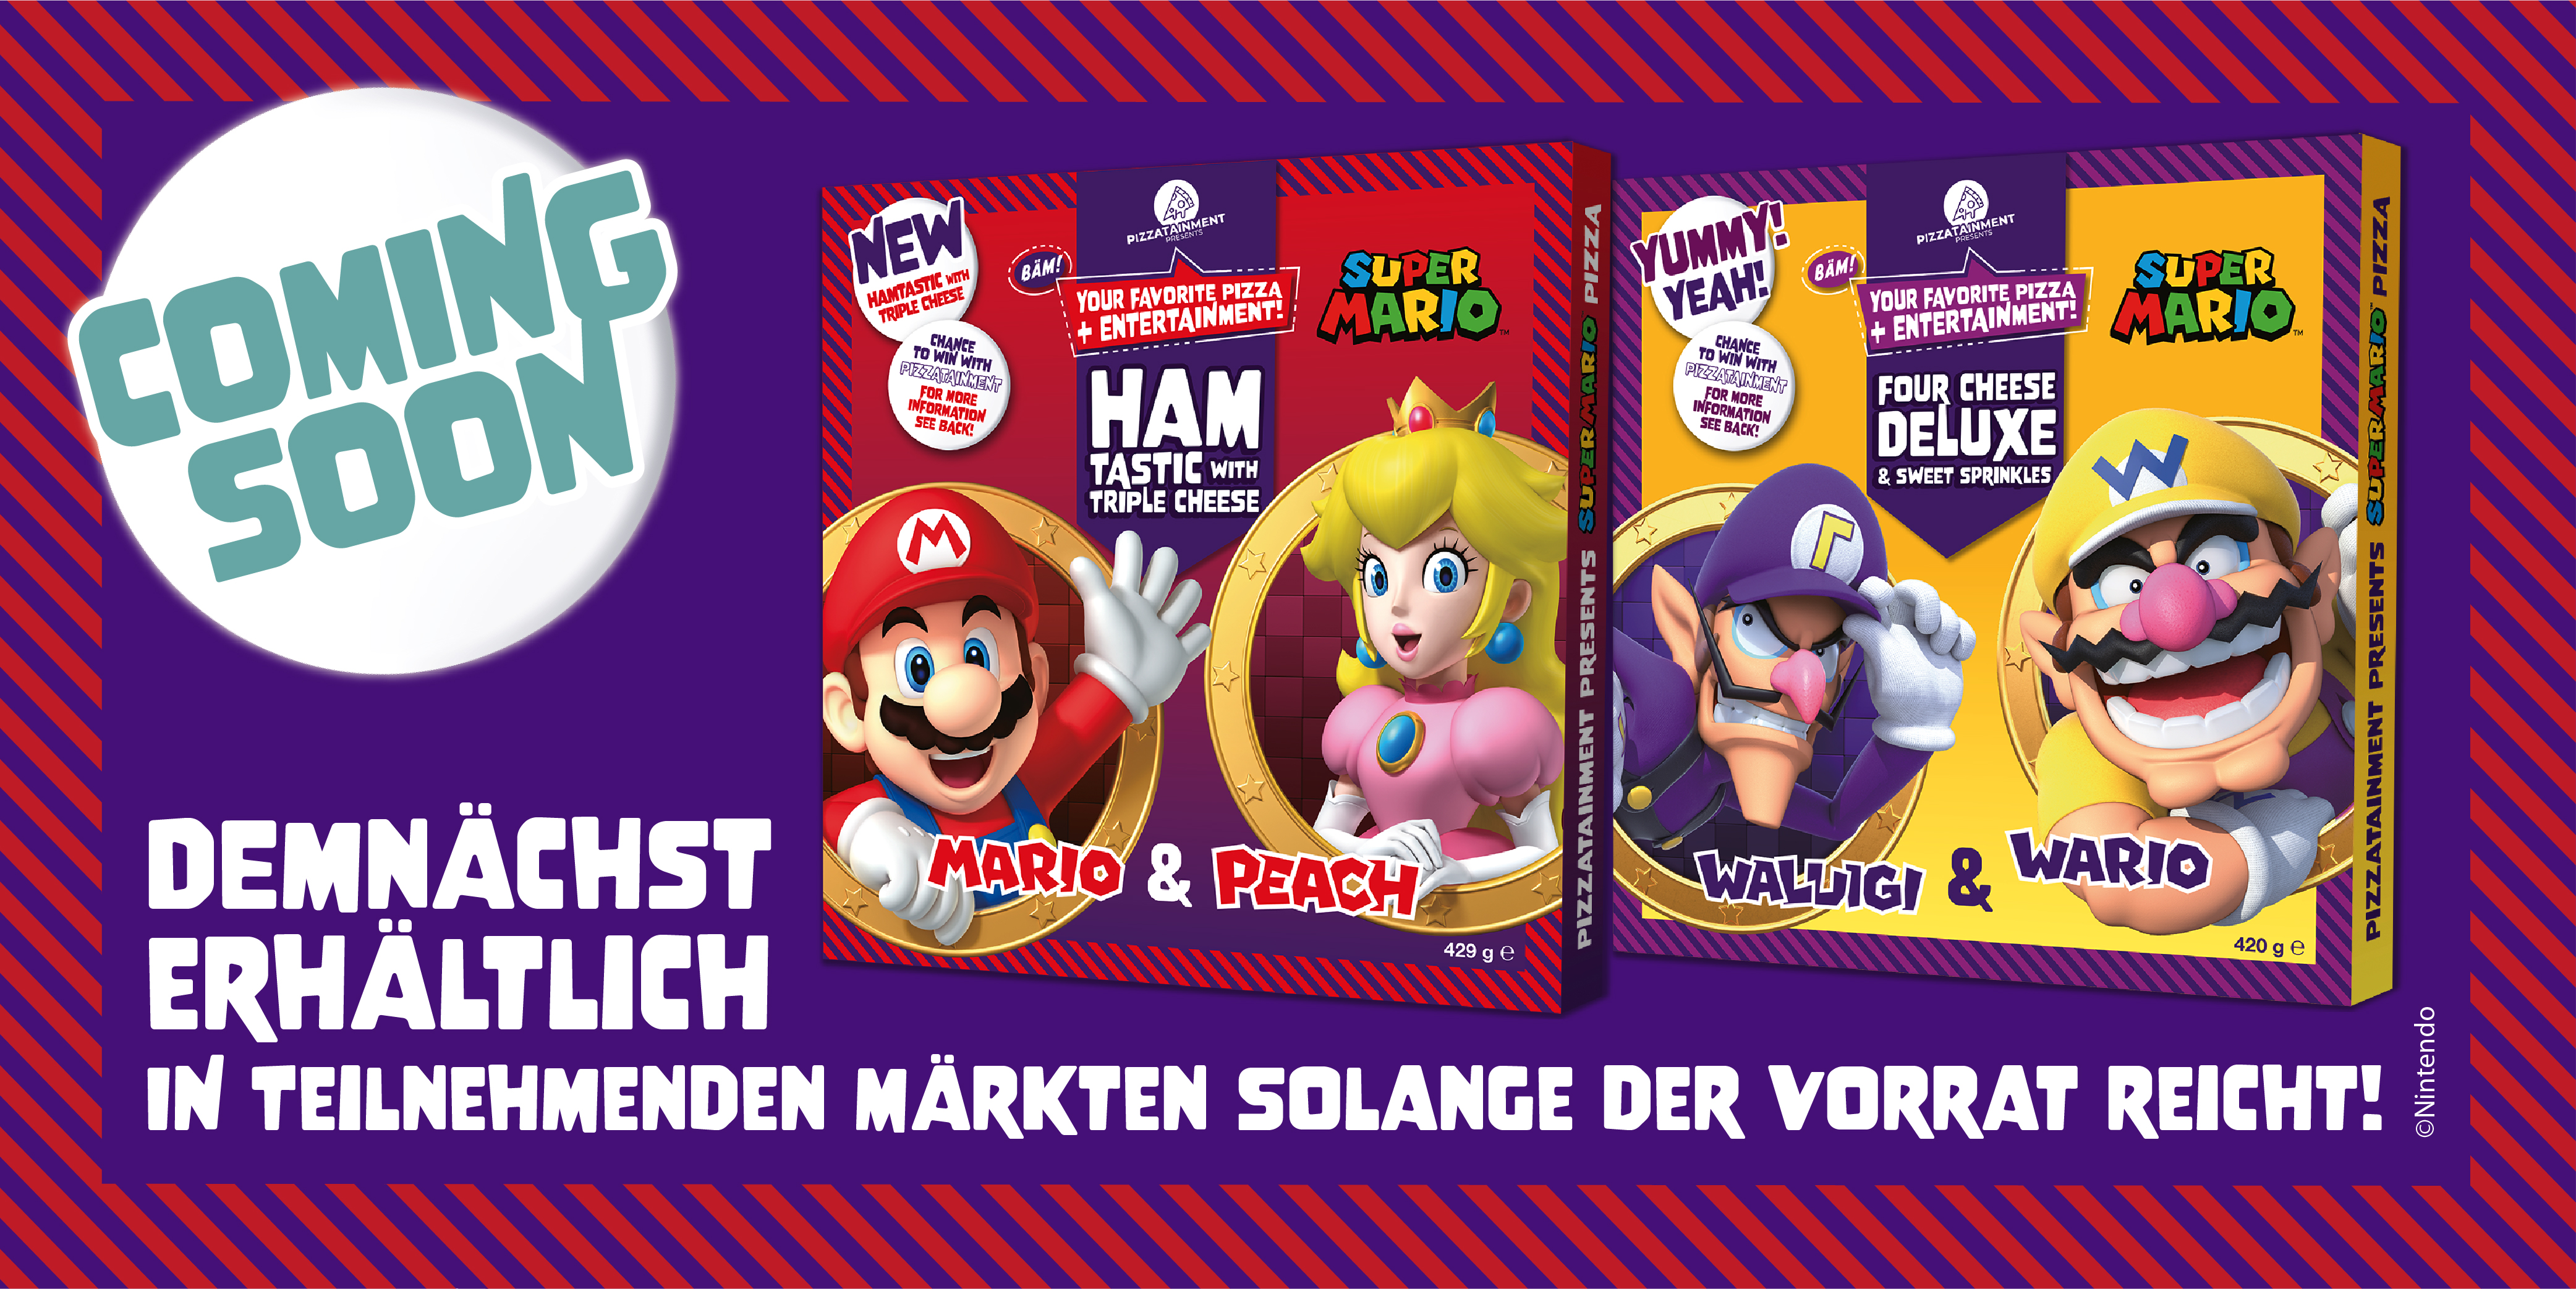 Mario & Peach sind die neuen Pizza-Stars!